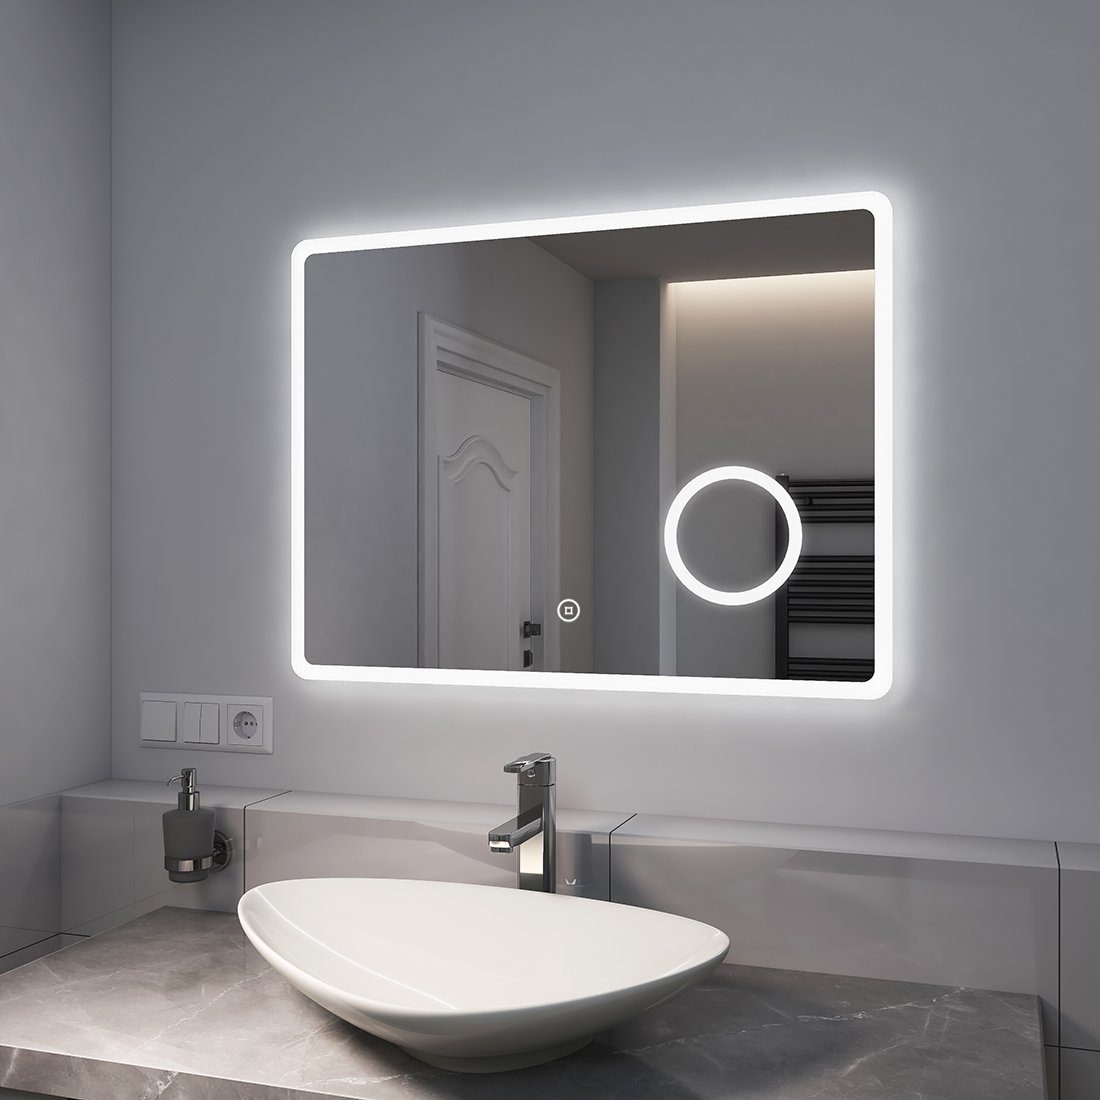 EMKE Badspiegel Badspiegel mit Beleuchtung LED Wandspiegel Badezimmerspiegel, mit Vergrößerung, Touchschalter, Kaltweißes Licht (Modell M)